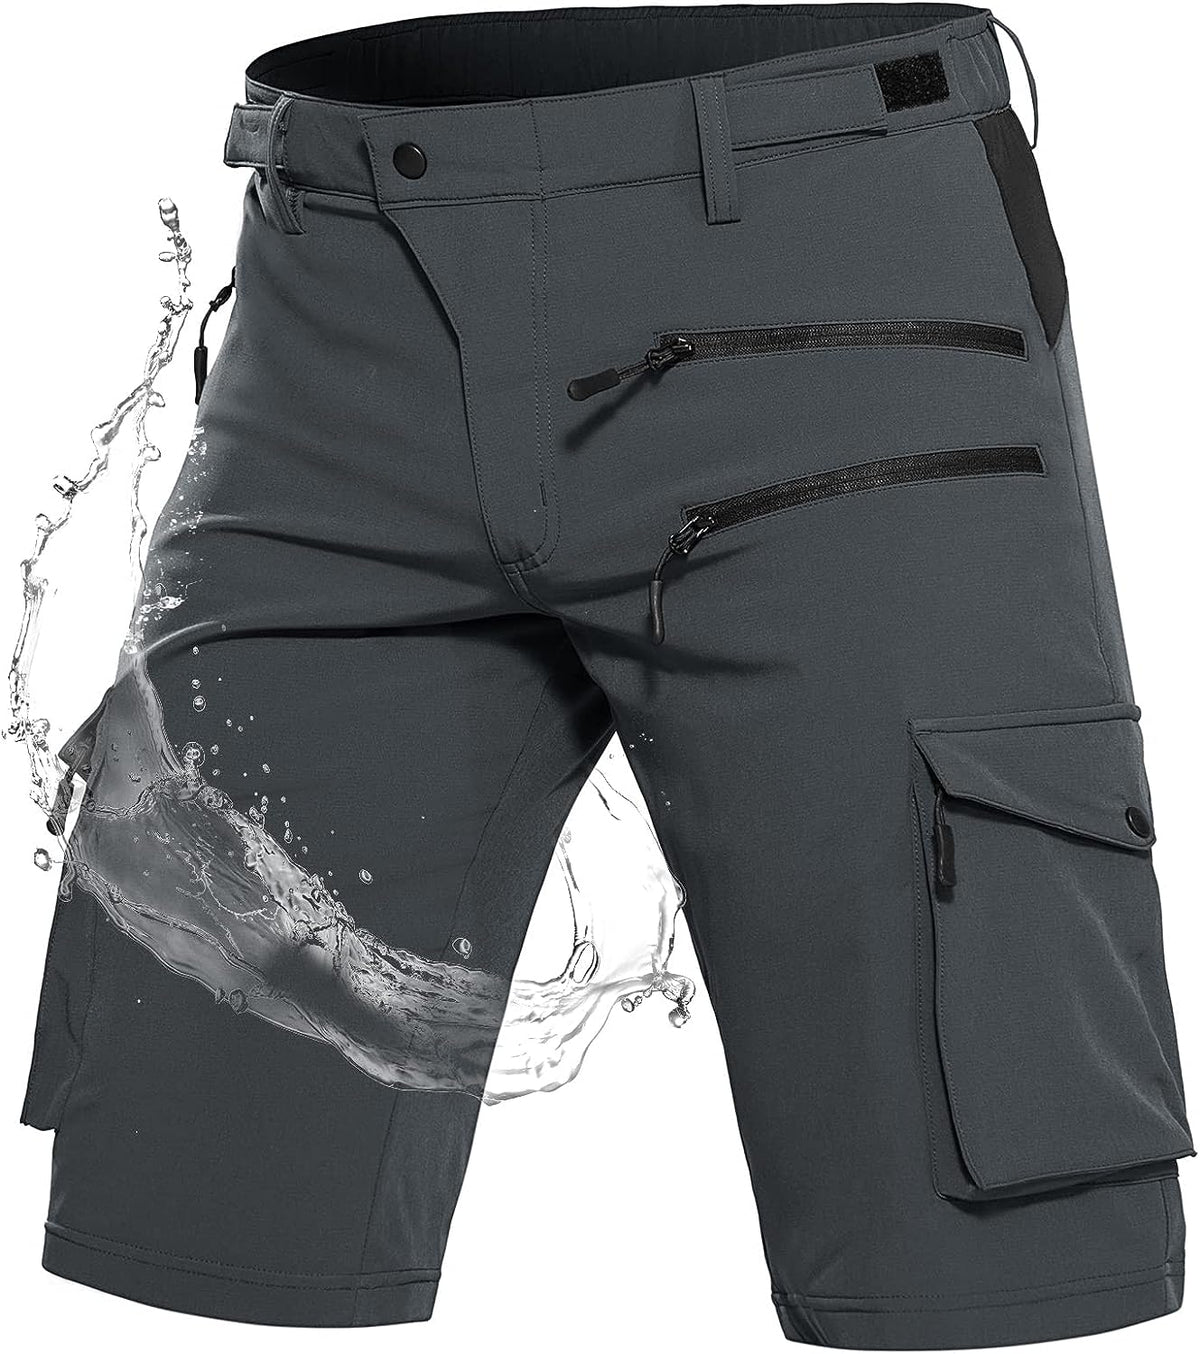 Men's Hiking Shorts Tactical Shorts #Color_dark grey